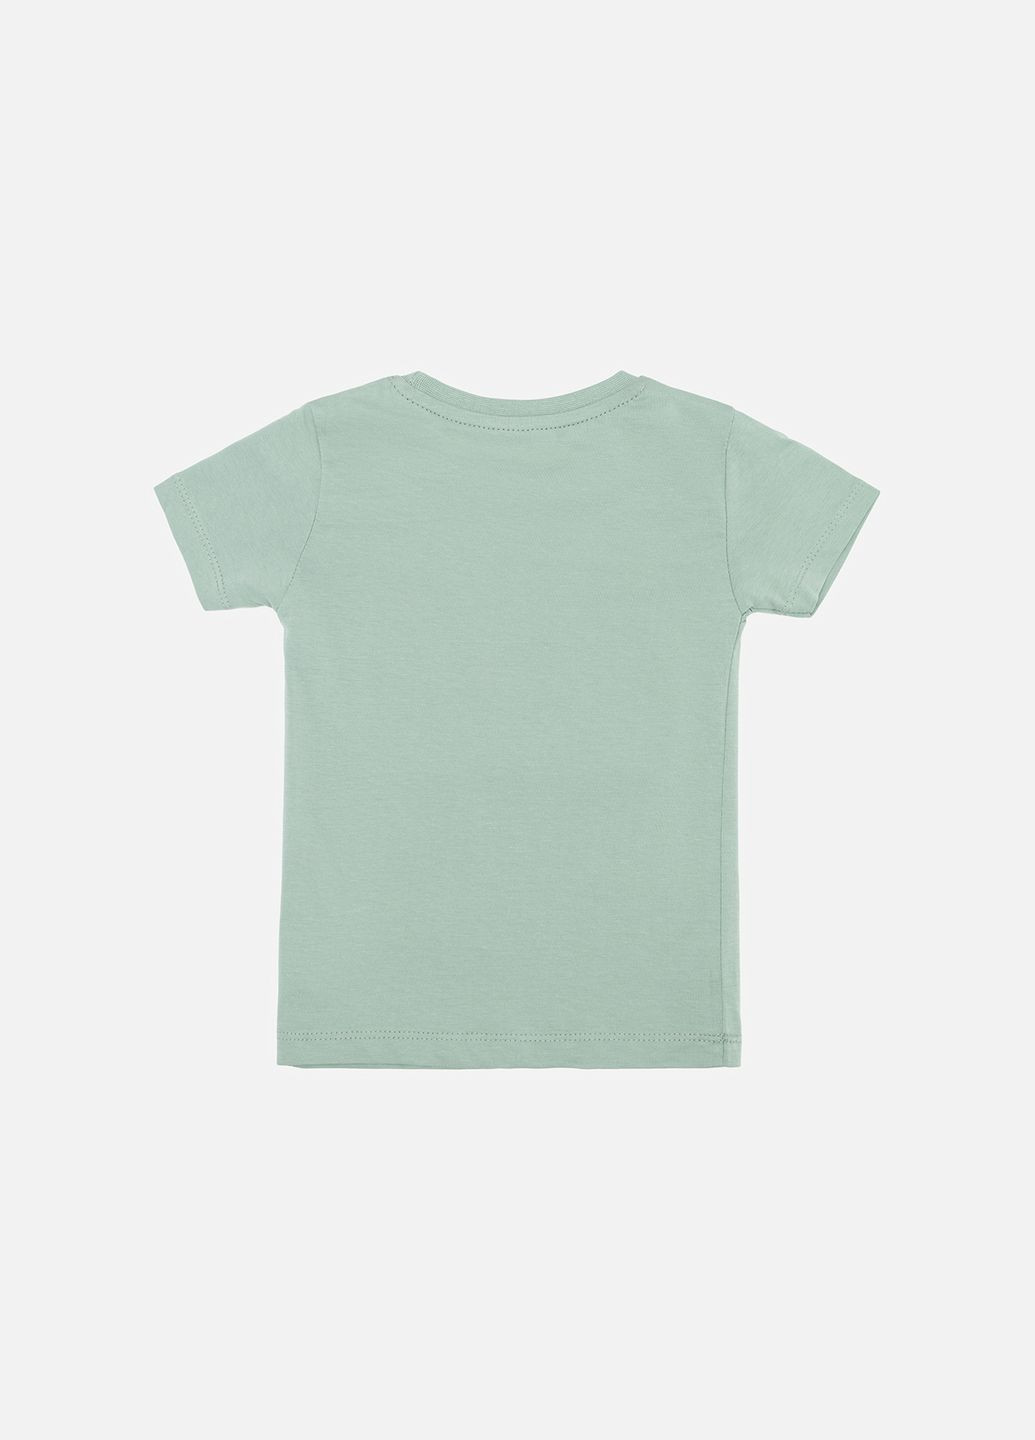 Оливковая летняя футболка с коротким рукавом для мальчика цвет оливковый цб-00244154 Ifba